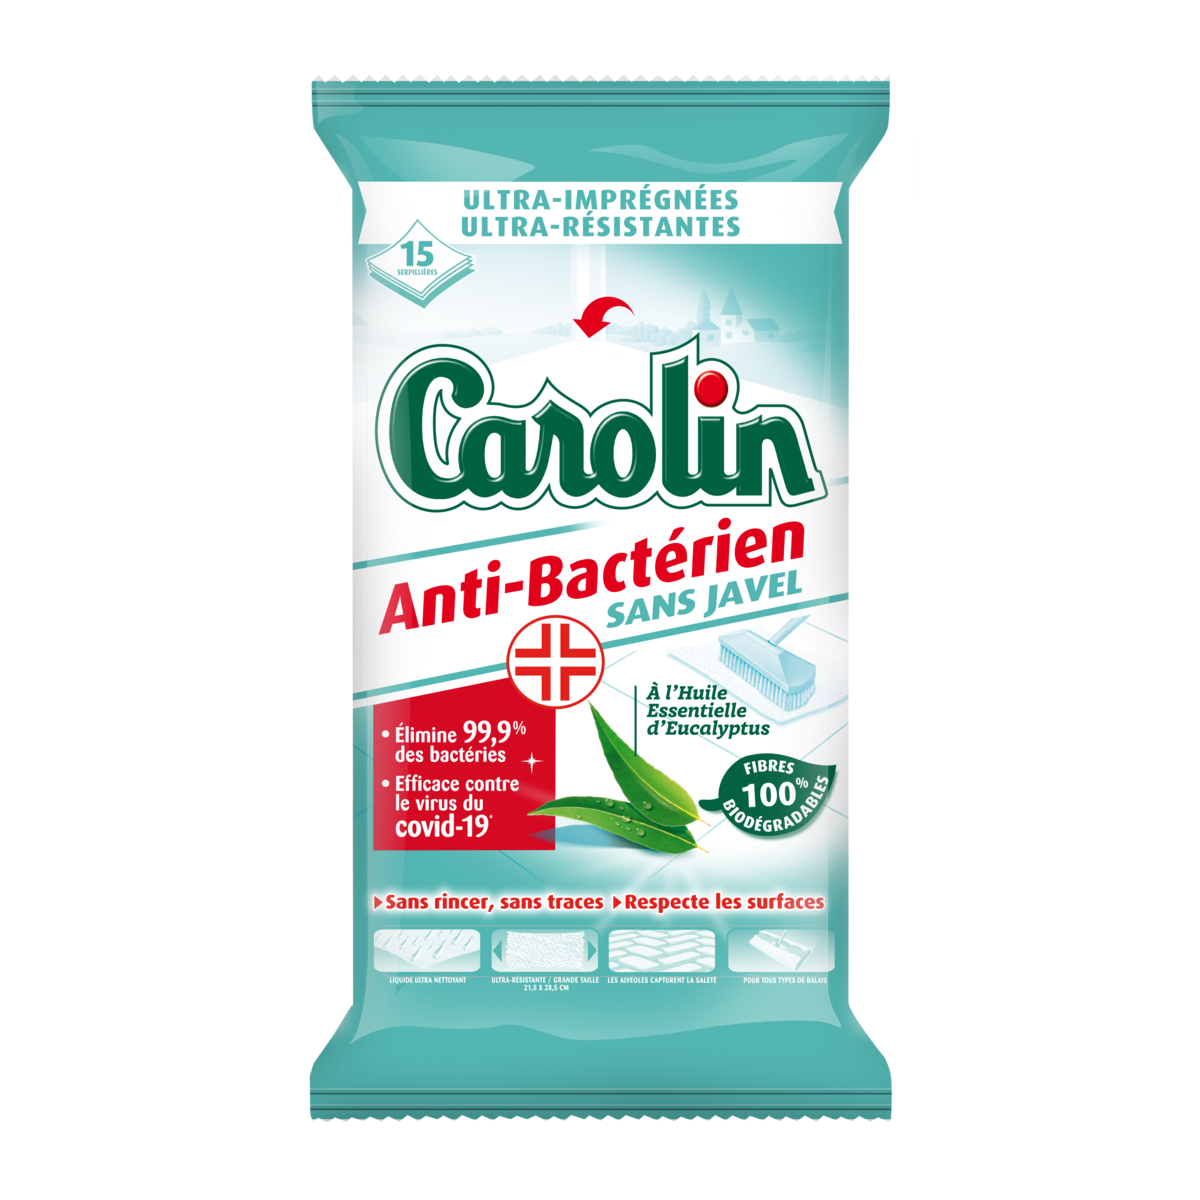 CAROLIN Lingettes anti-bactérienne sans javel à l'eucalyptus 15